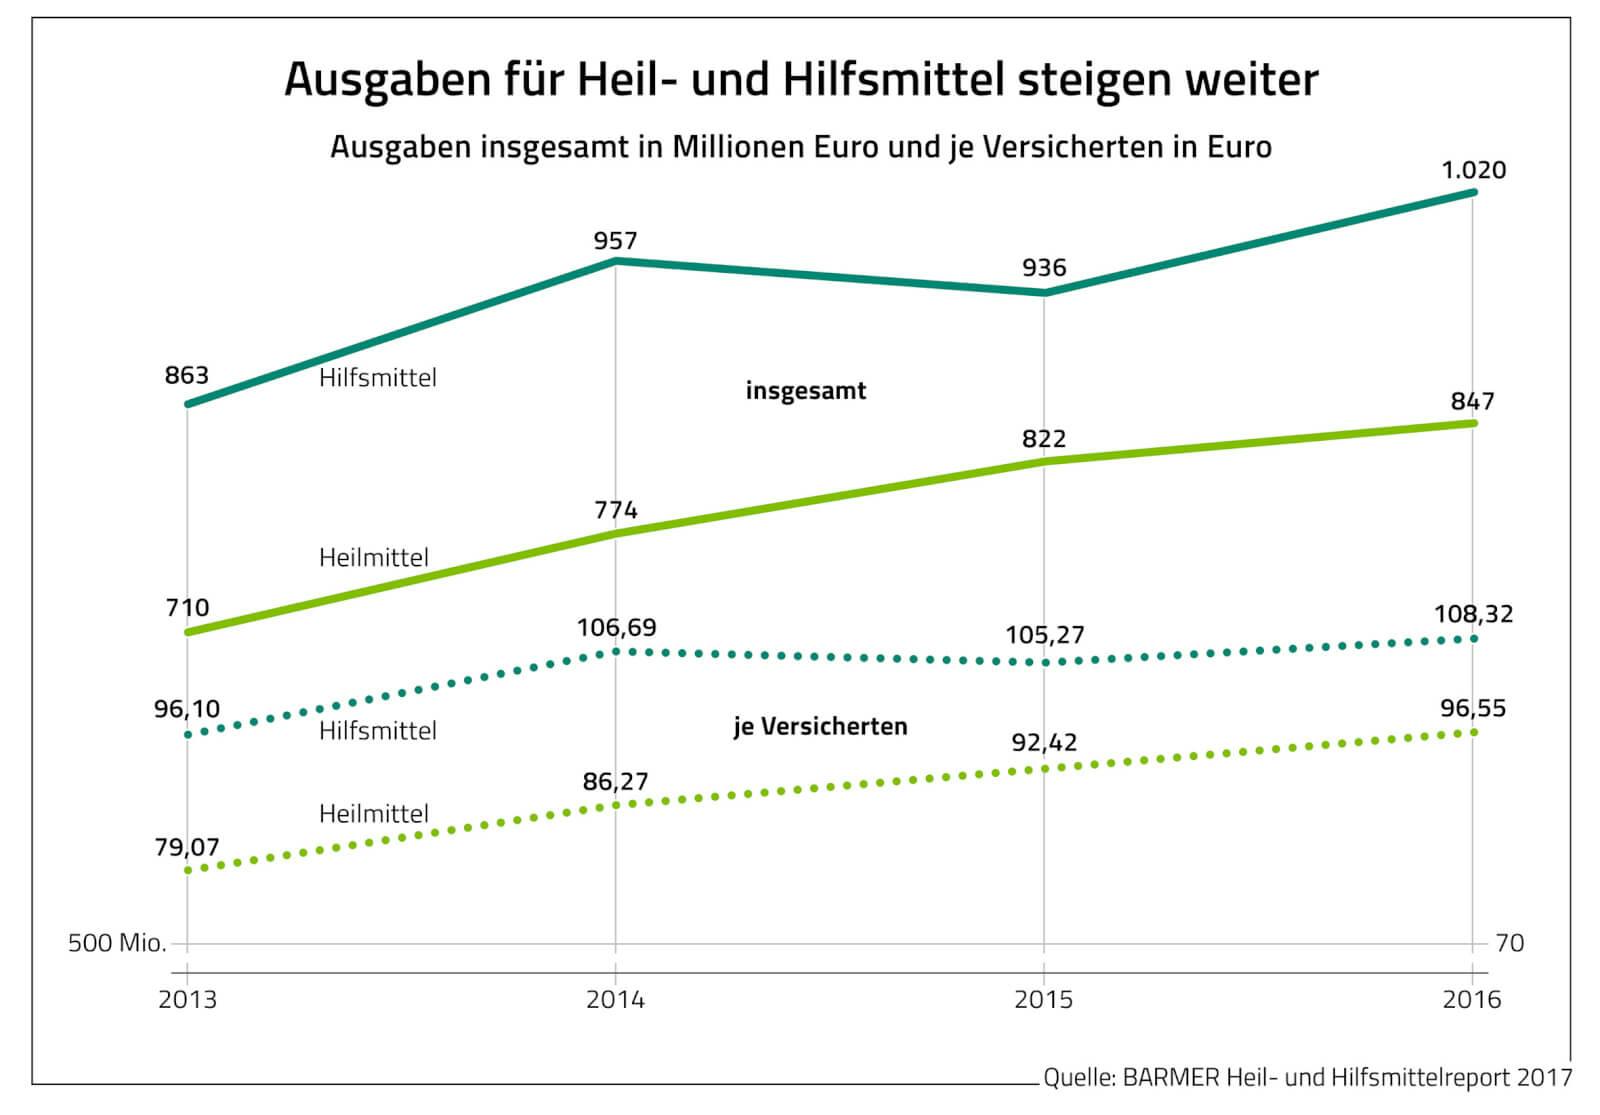 Ausgabensteigerungen im Heilmittelbereich: Der Heil- und Hilfsmittelreport 2017 fokussiert sich auf wachsende Kosten